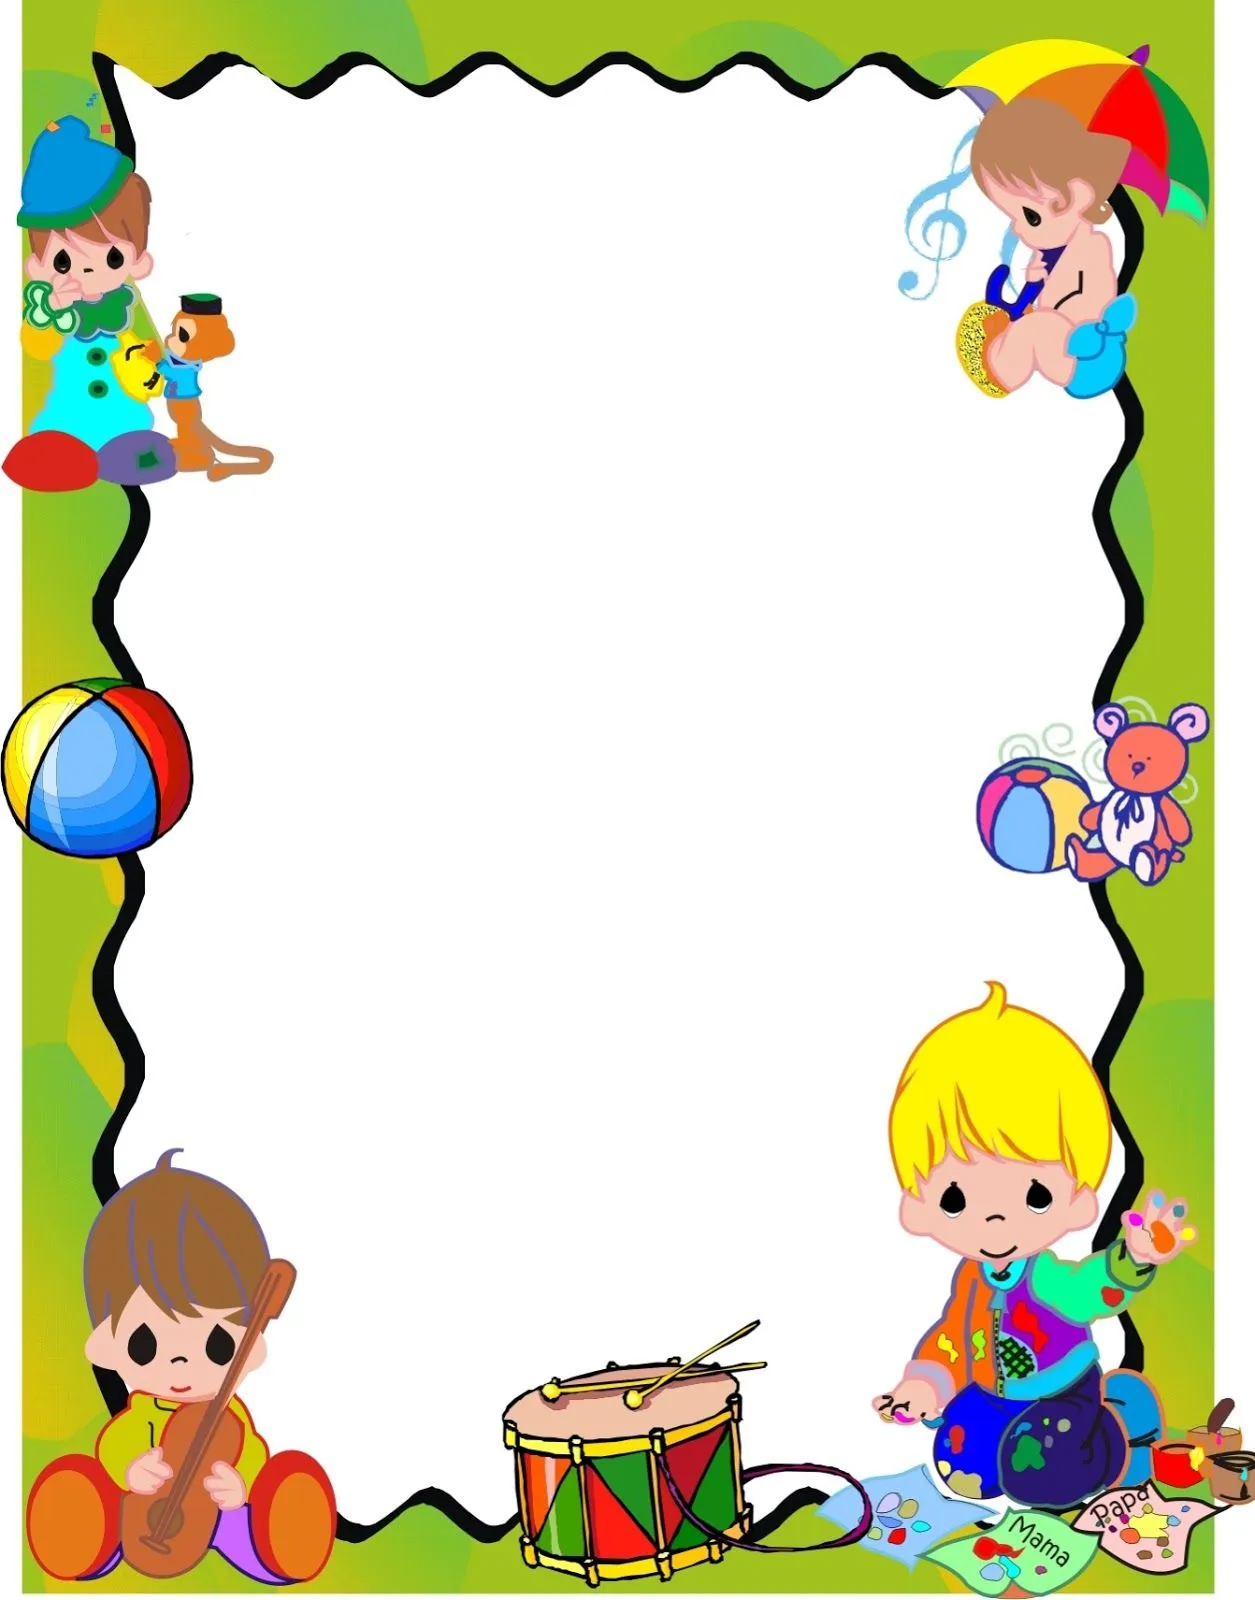 Imagenes de bordes para caratulas para niños - Imagui